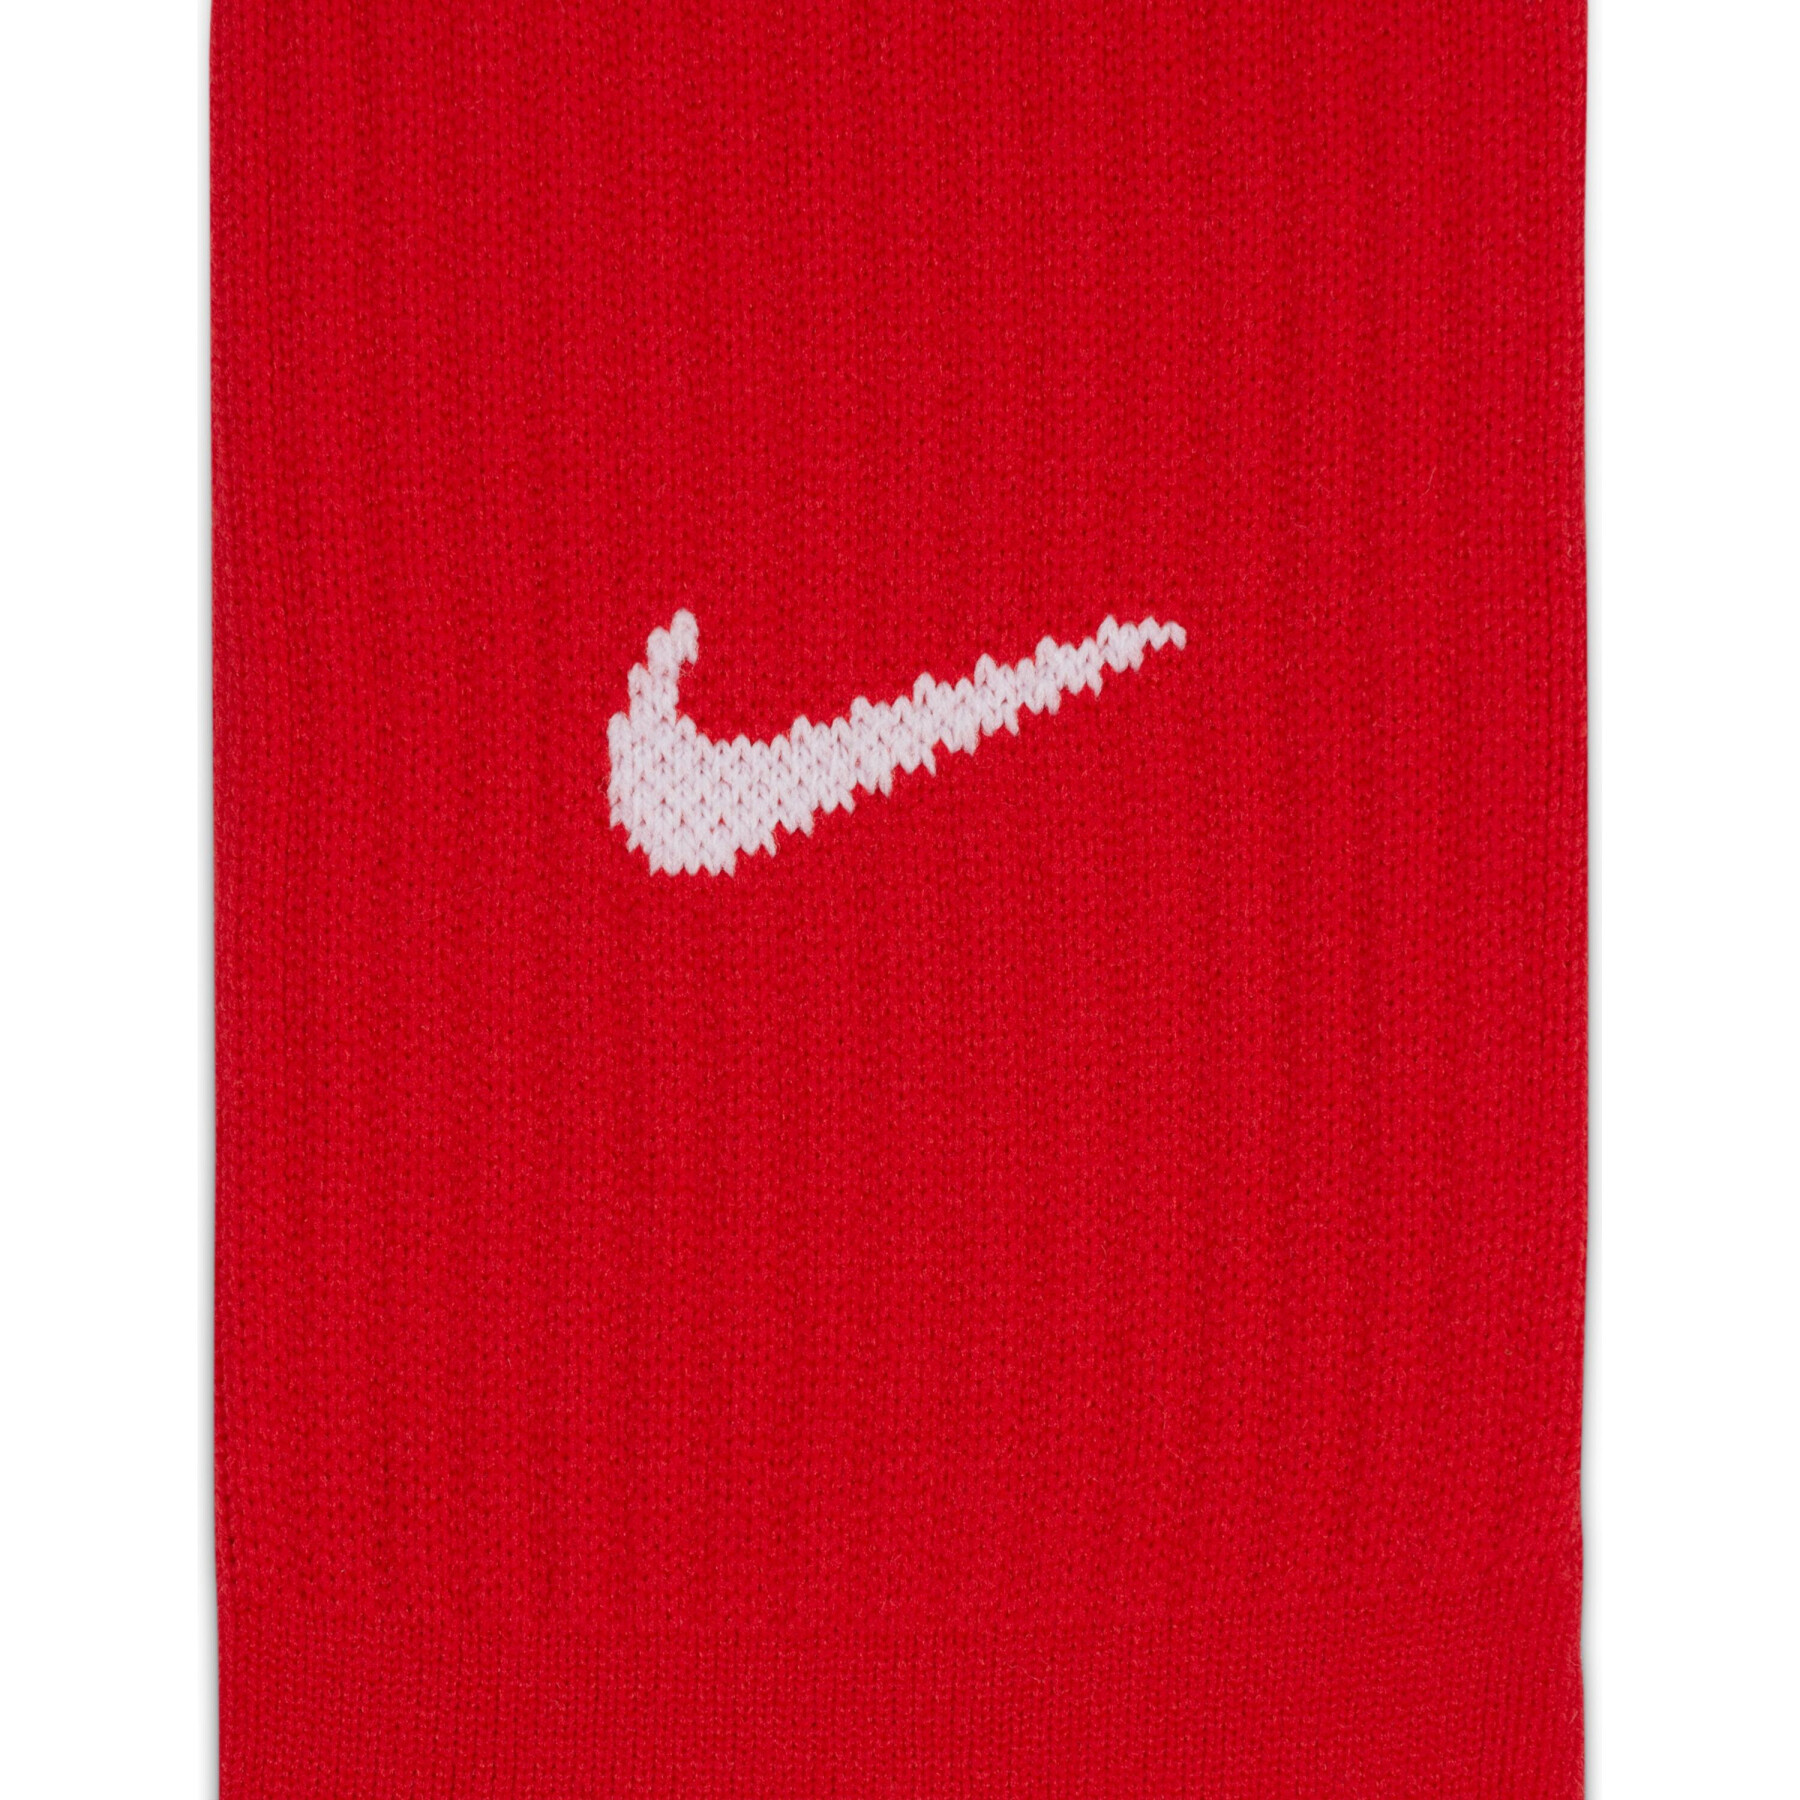 Socks Nike Classic II